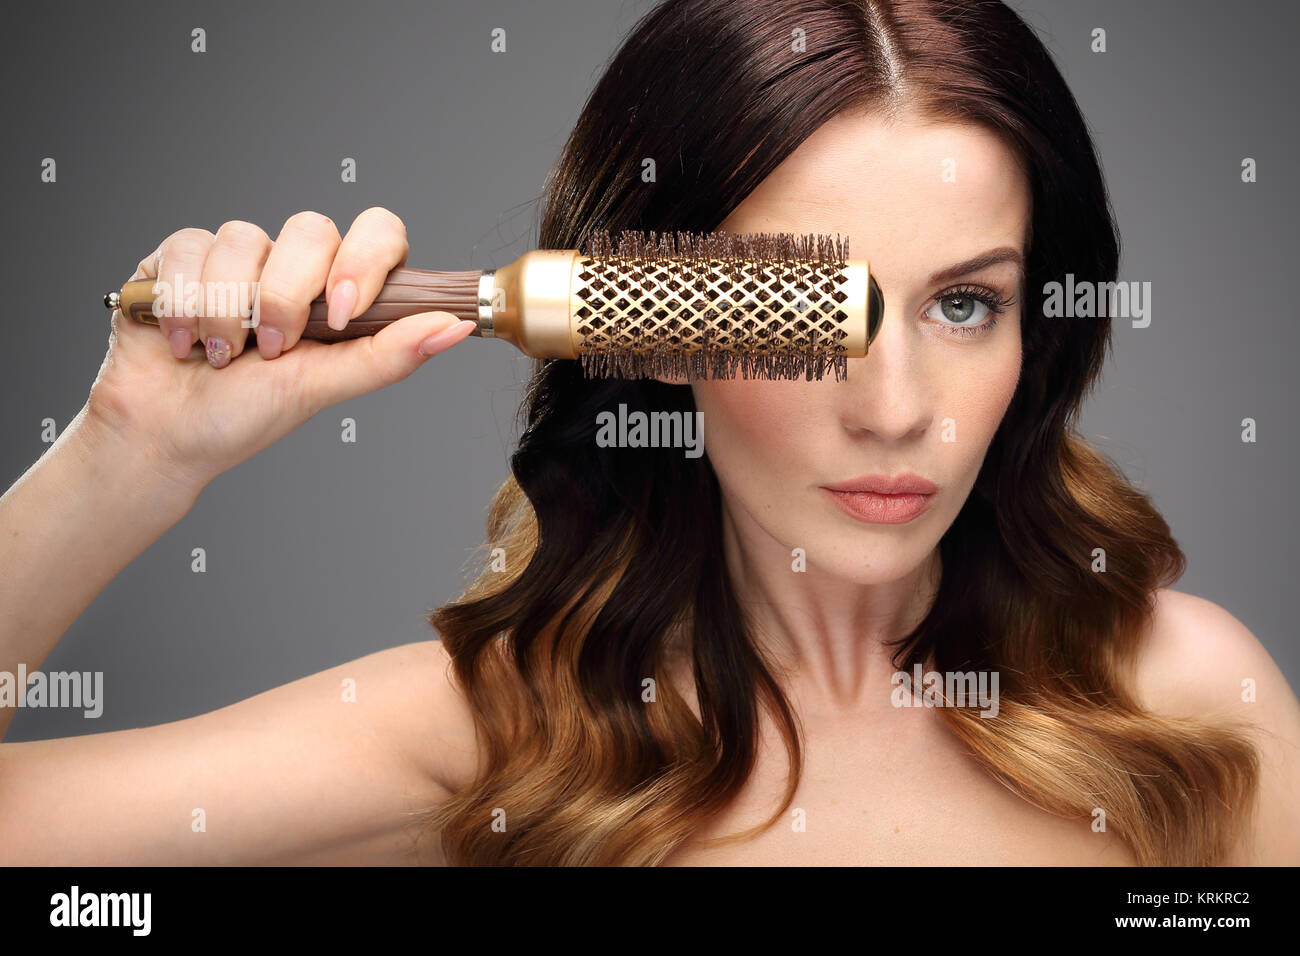 La modellazione di spazzola per capelli. Foto Stock